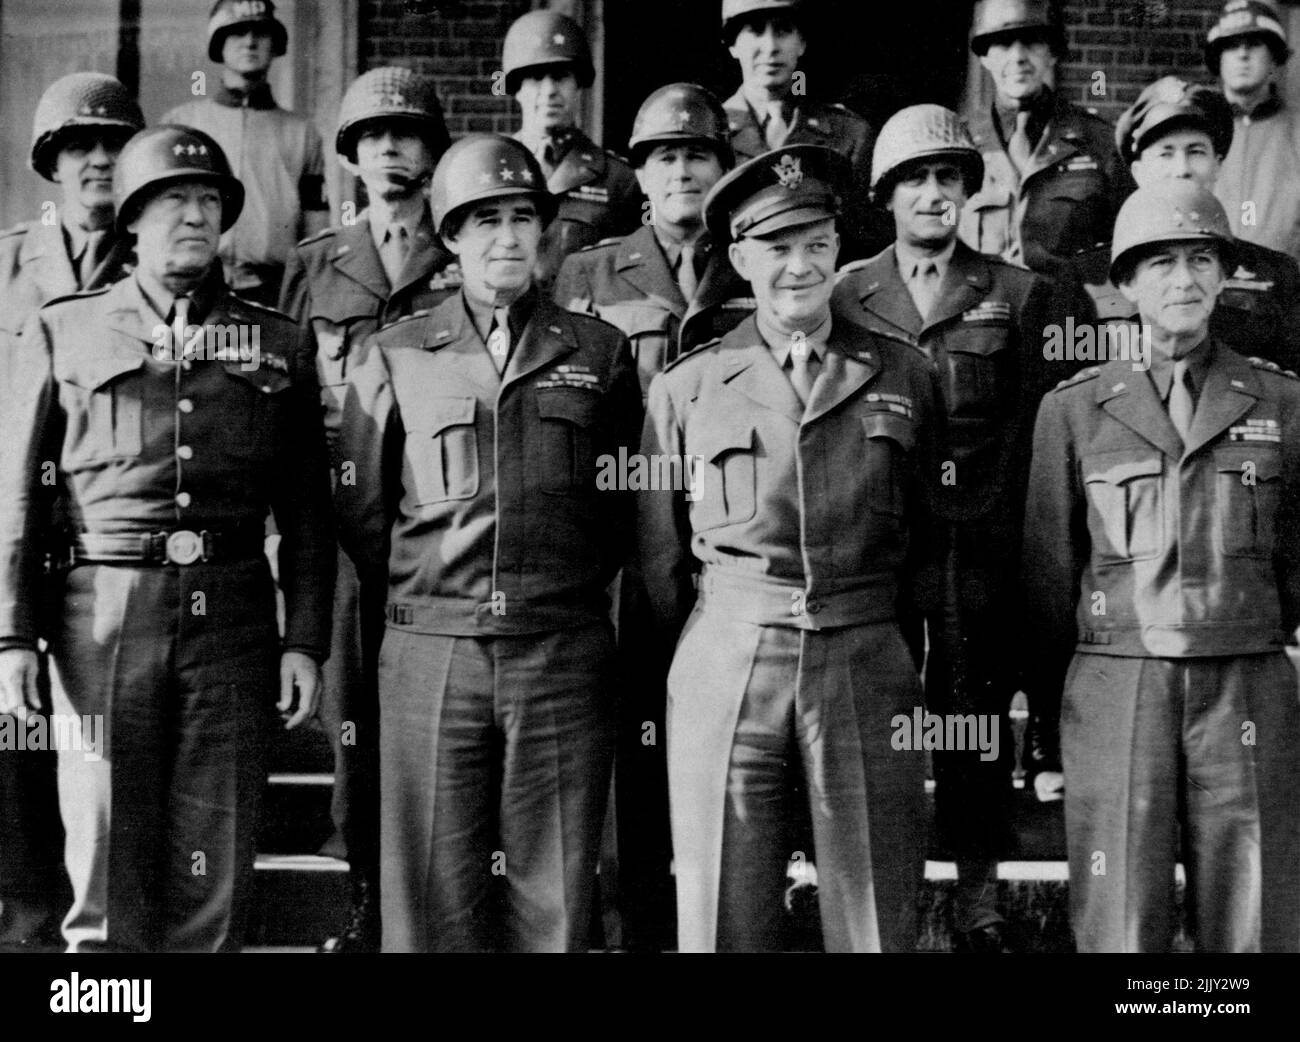 Reihe (von links nach rechts): Maj. Gen. William B. Keen, Stabschef der ersten US-Armee; Maj. Gen. Charles H. Corlett, Korpskommandant 19.; erste Armee; Maj. Gen. J. Laughton Collins, Kommandant des siebten Korps, erste Armee; Maj. Gen. Lenard T. Gerow, Kommandant des fünften Korps, erste Armee; Und Maj. General Elwood Quesada, Kommandeur, neuntes Kampfkommando. Dritte Reihe: (Von links nach rechts): Maj. Gen. Leven C. Allen, Brig, ***** Charles E. Hart und Brig. General Truman C. Turson, alle drei Mitglieder des ersten Armeestaktes von General Hodges. (Die Abgeordneten am Ende des dritten ***** Sind nicht identifiziert). 11. Januar 1944. (Foto von ACME). Stockfoto